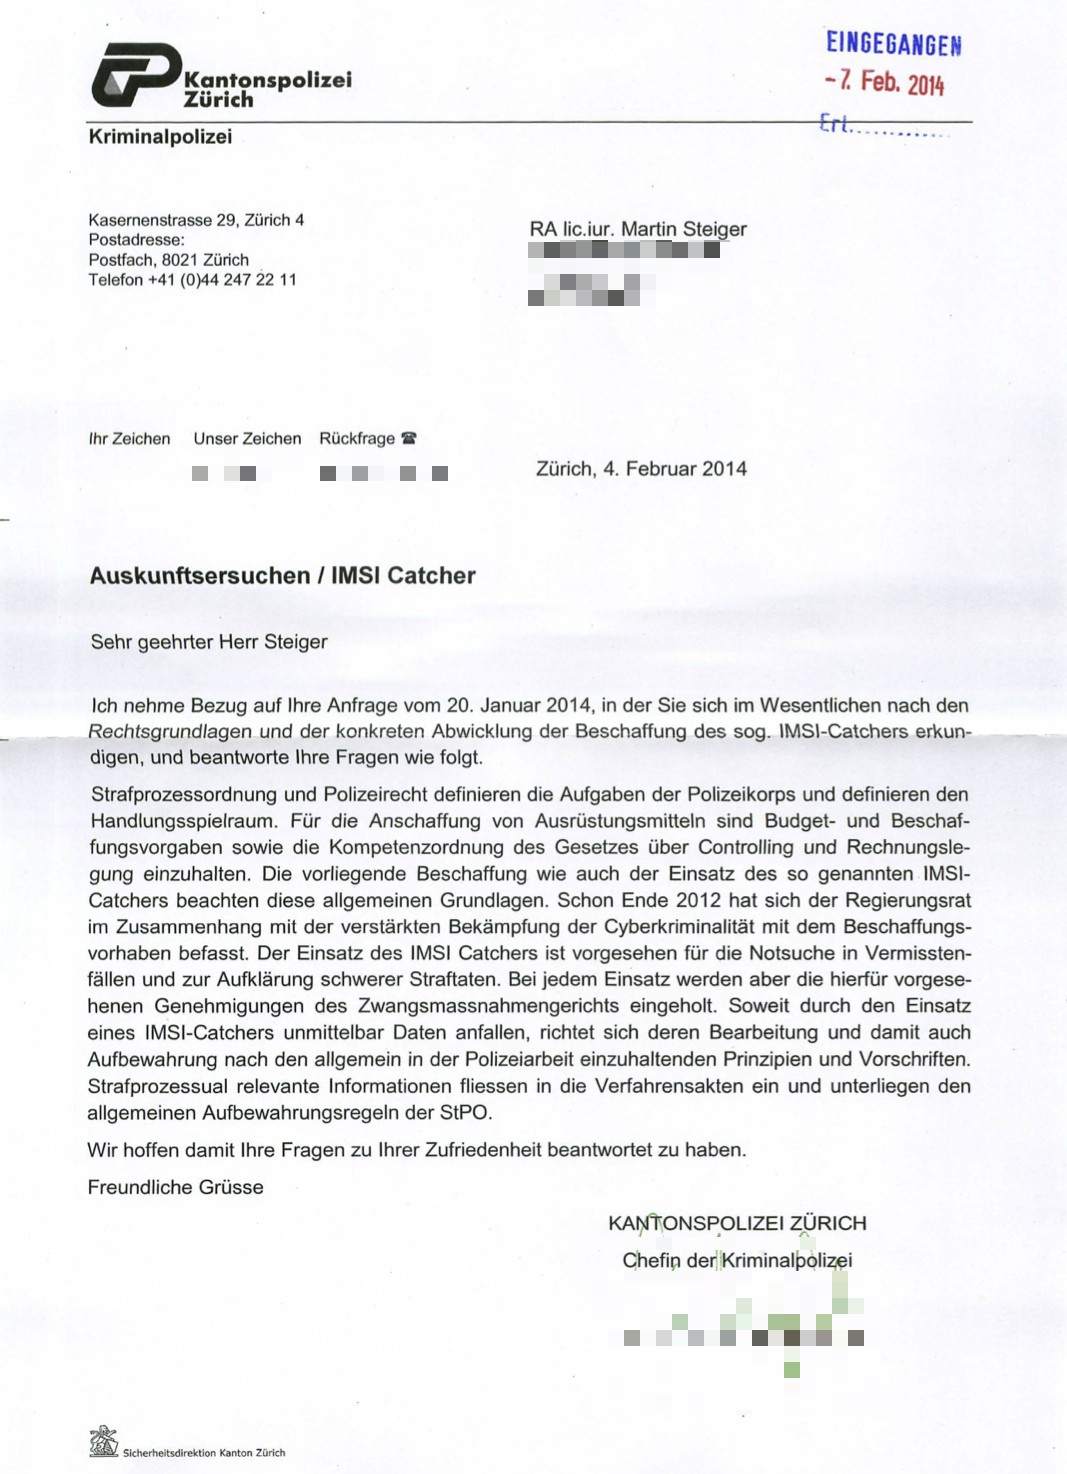 IMSI-Catcher: Unbefriedigende Auskunft der Kantonspolizei Zürich